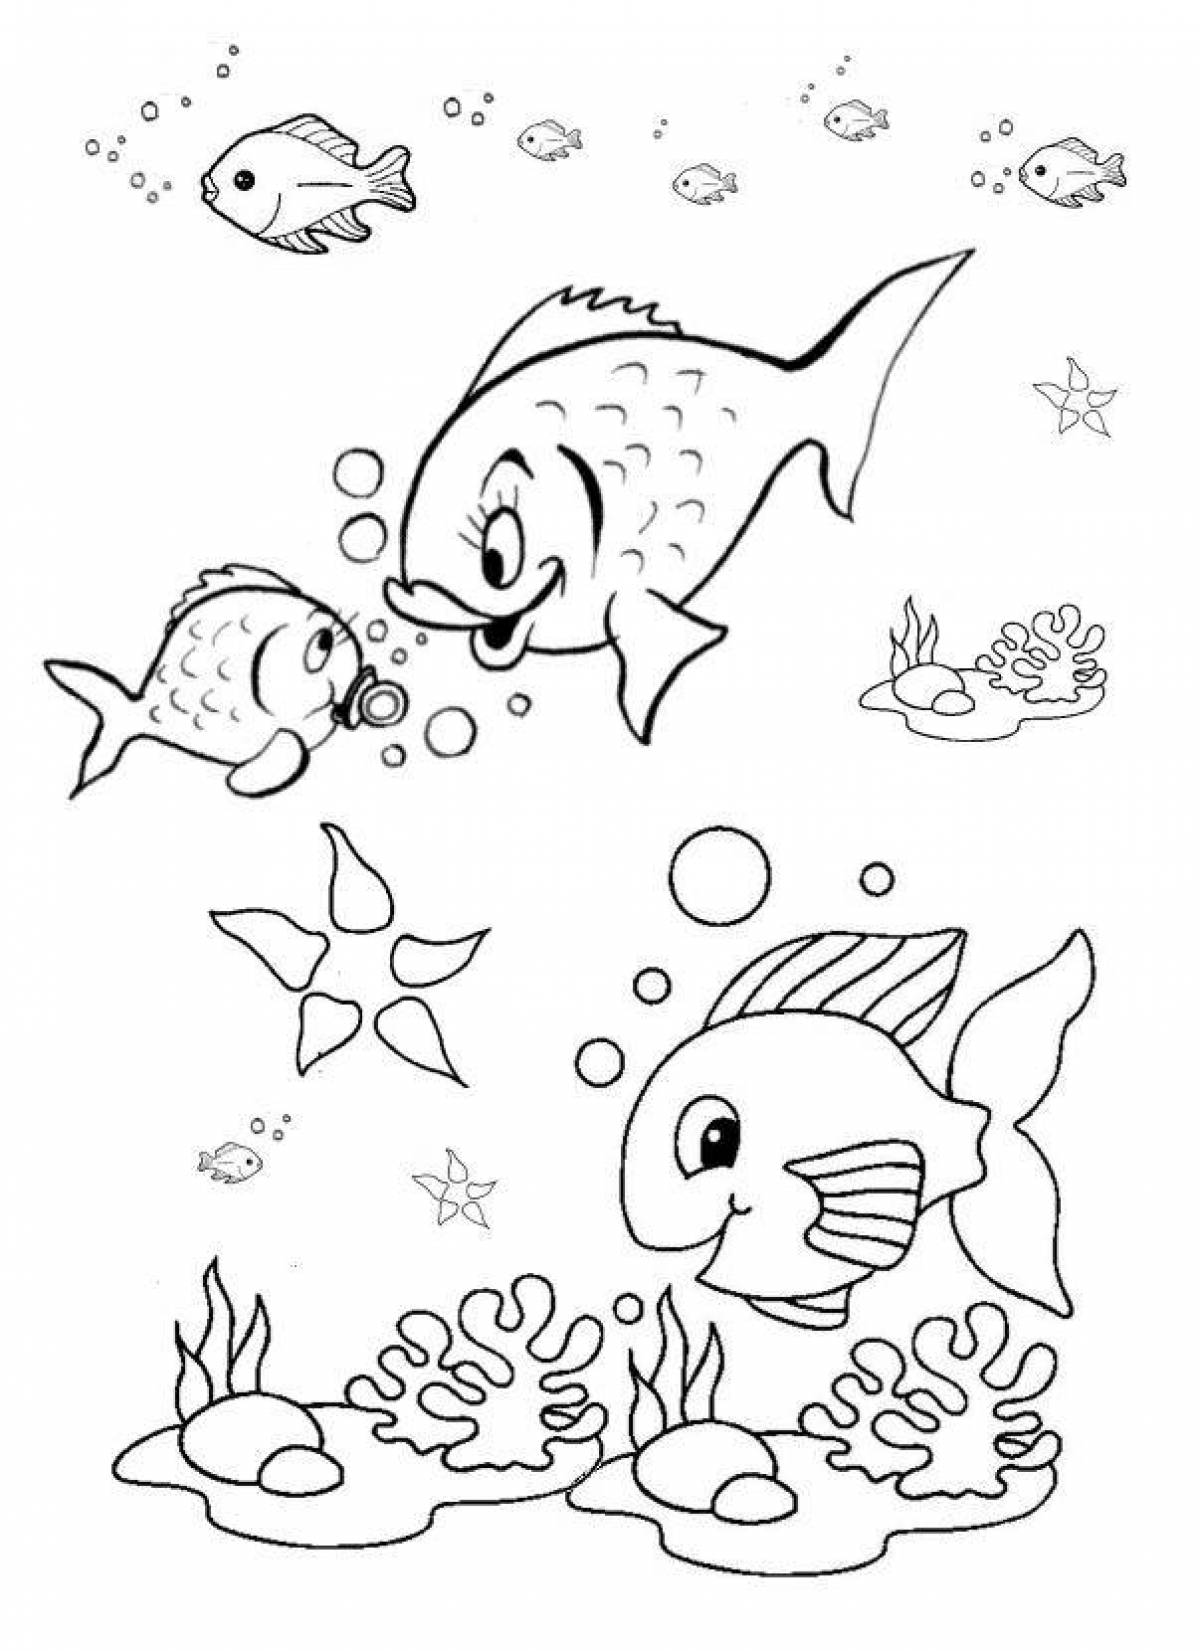 Раскраска рыбки для детей 5 6 лет. Рыба раскраска для детей. Аквариумные рыбки раскраска. Рыбка раскраска для детей. Аквариумные рыбки раскраска для детей.